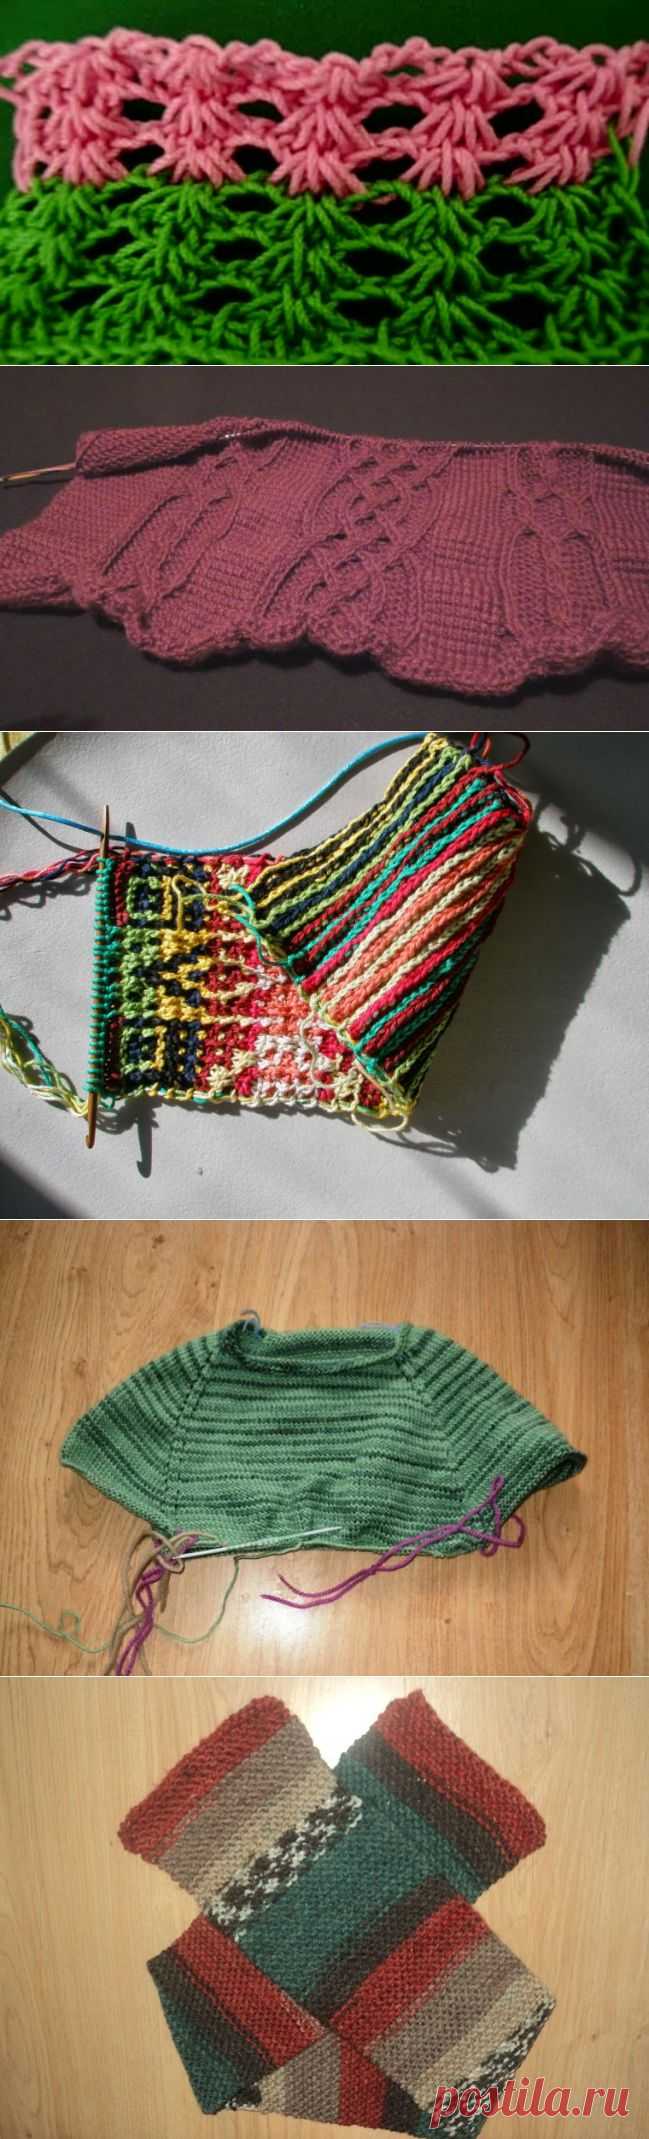 Нукинг: три в одном, или Новая техника вязания - Ярмарка Мастеров - ручная работа, handmade